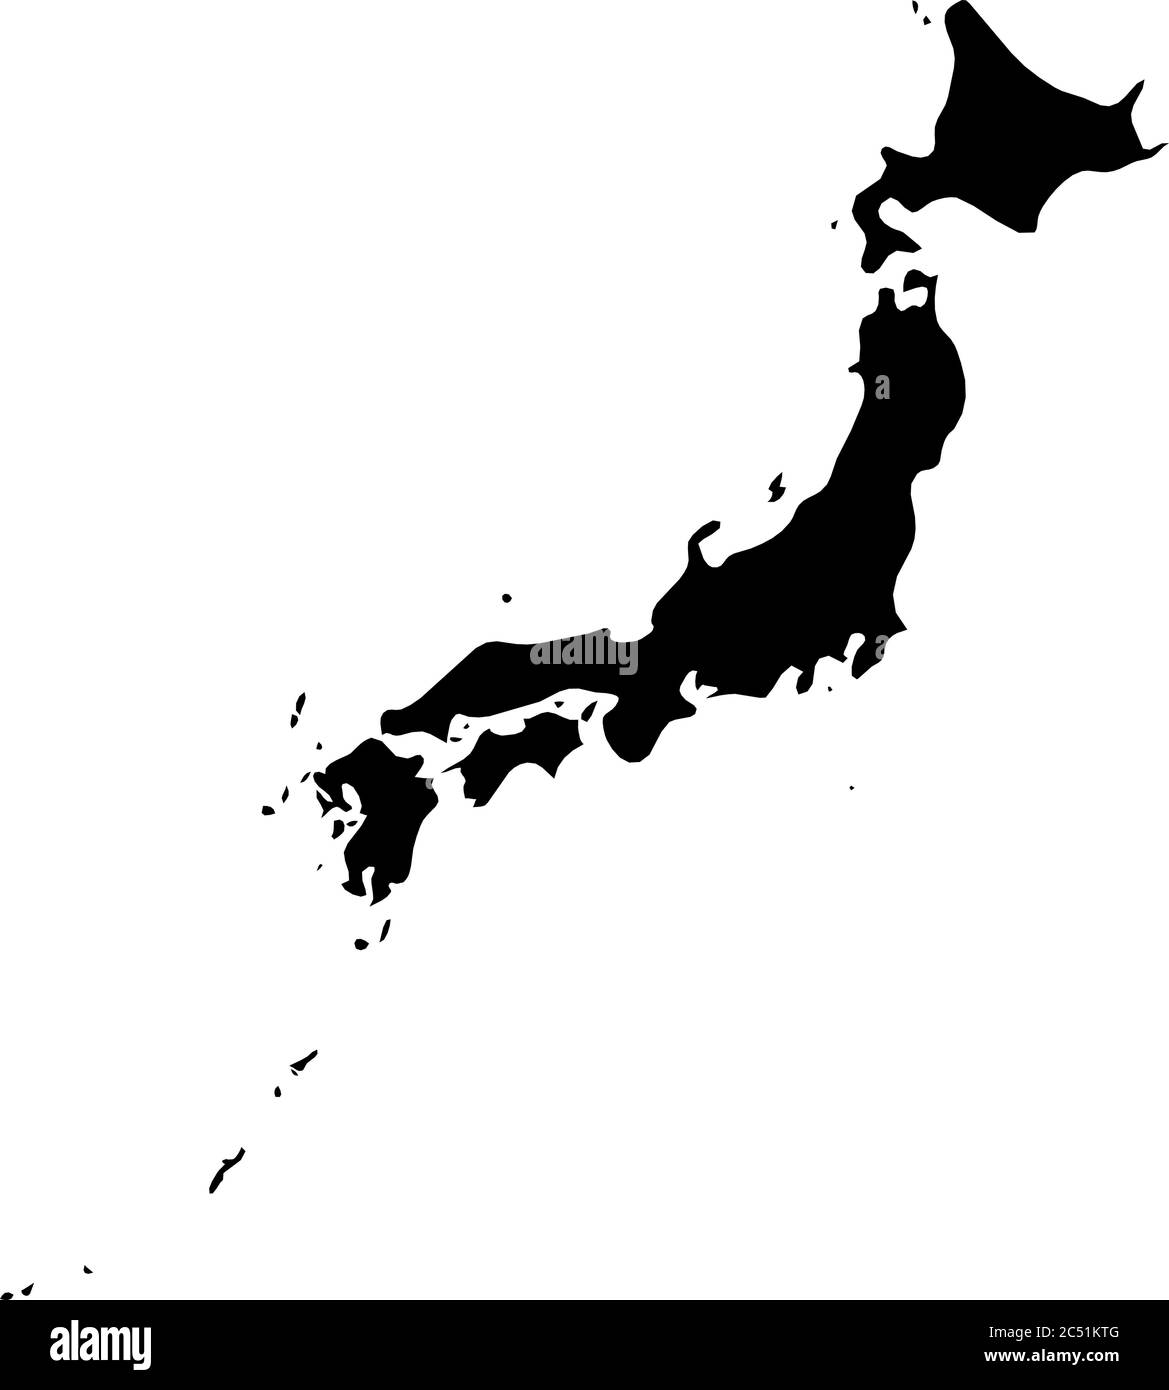 Japon - carte silhouette noire unie de la région. Illustration simple à vecteur plat. Illustration de Vecteur